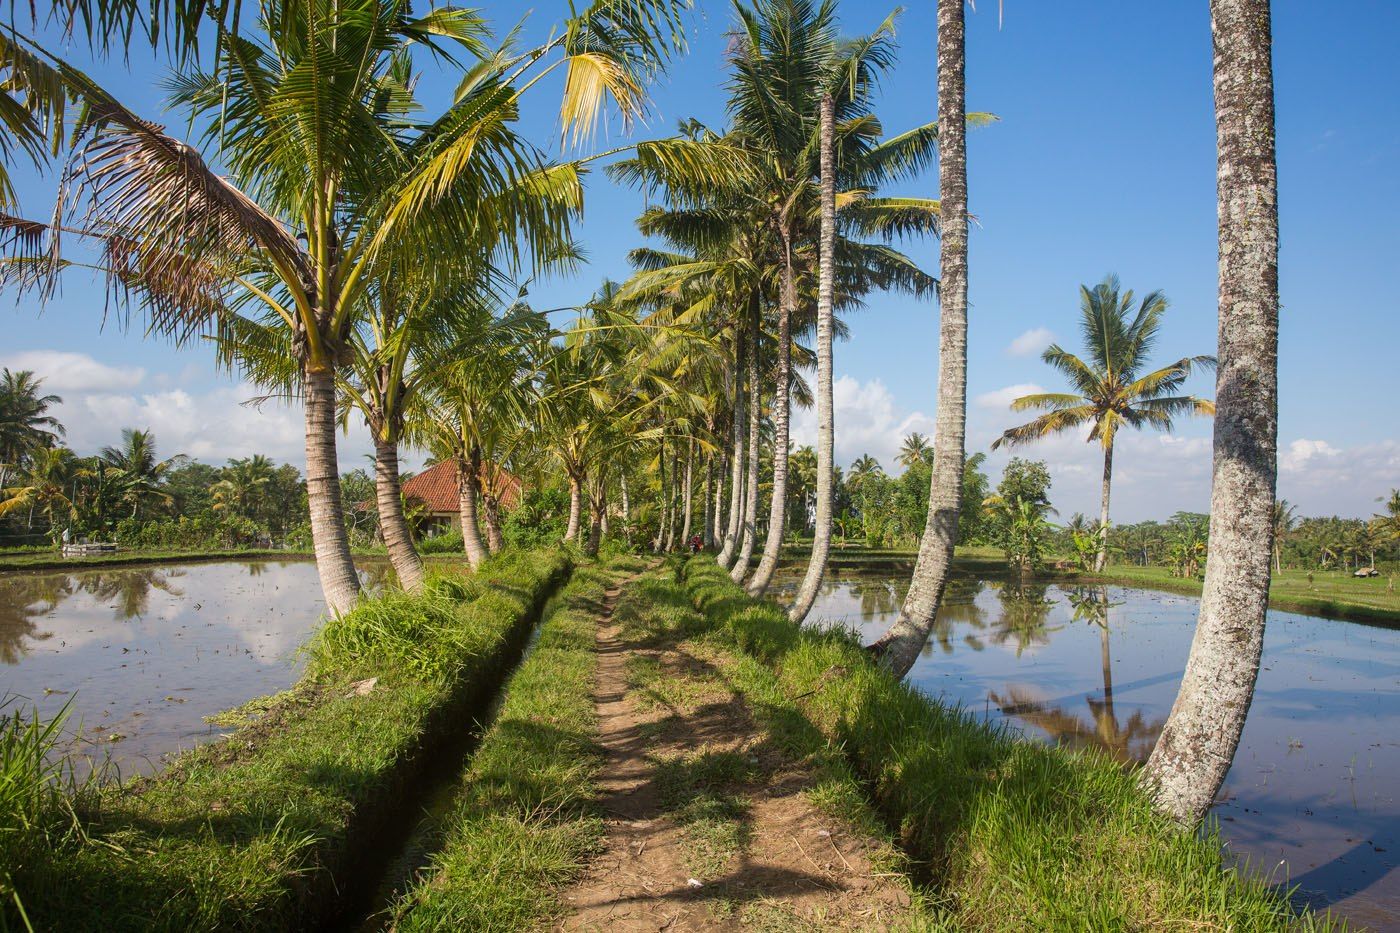 Walking rice fields Bali